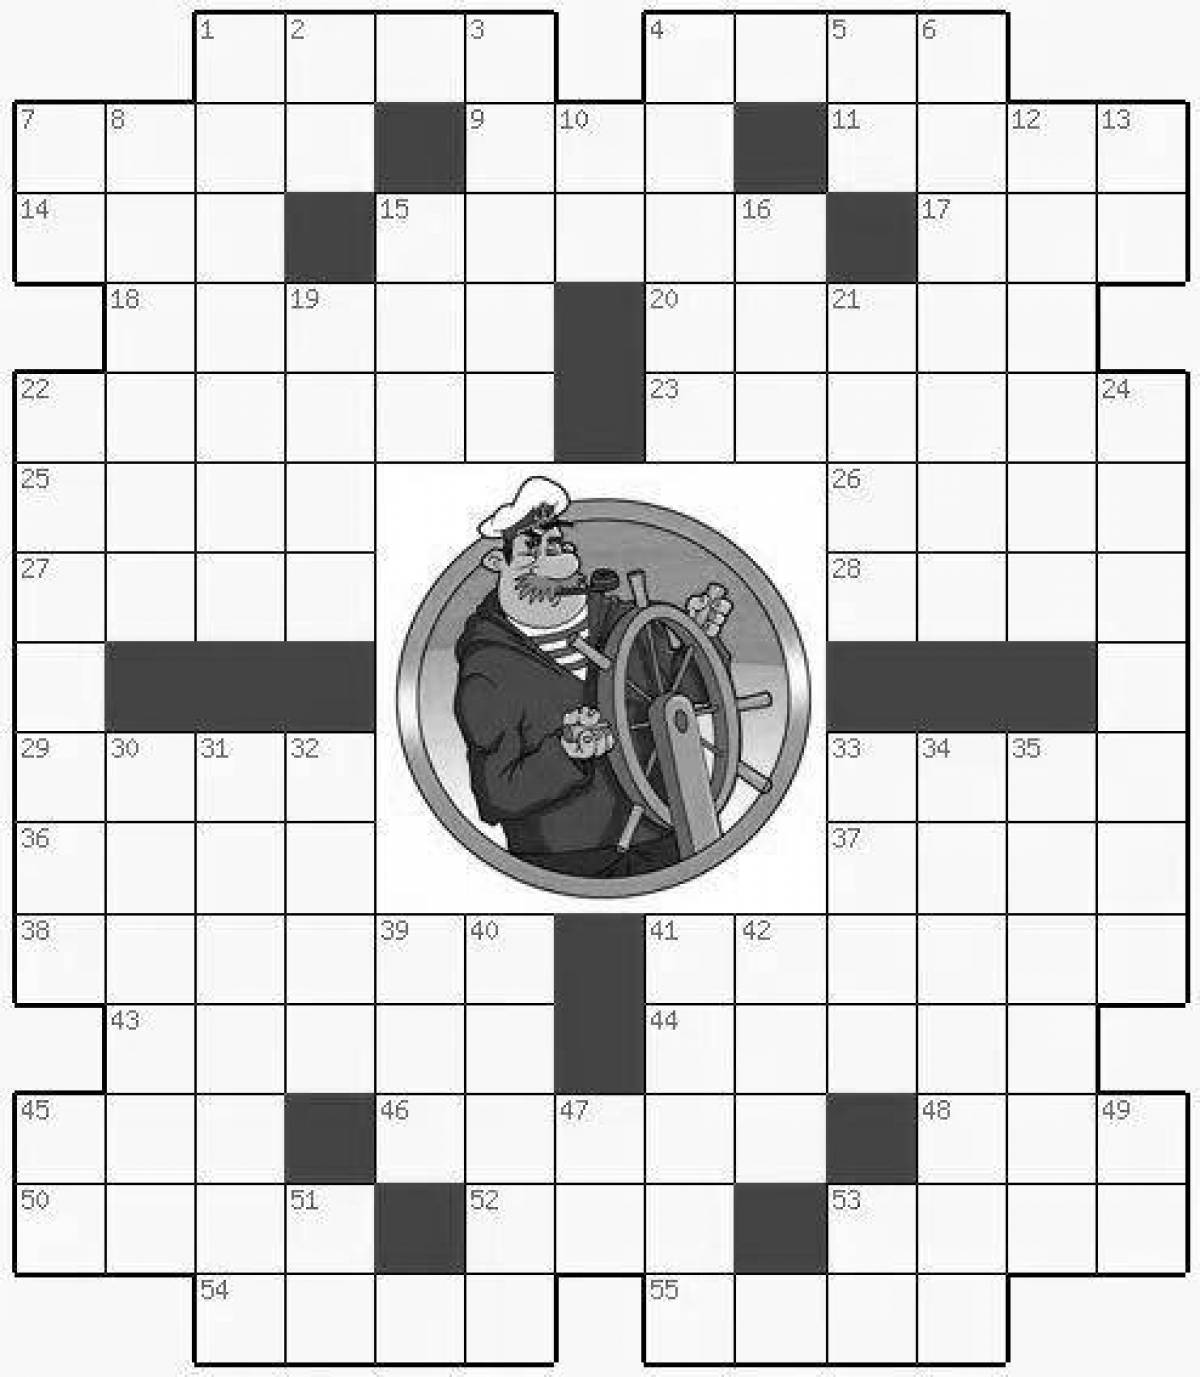 Ceramic tiles handmade 7 letters crossword answer #7